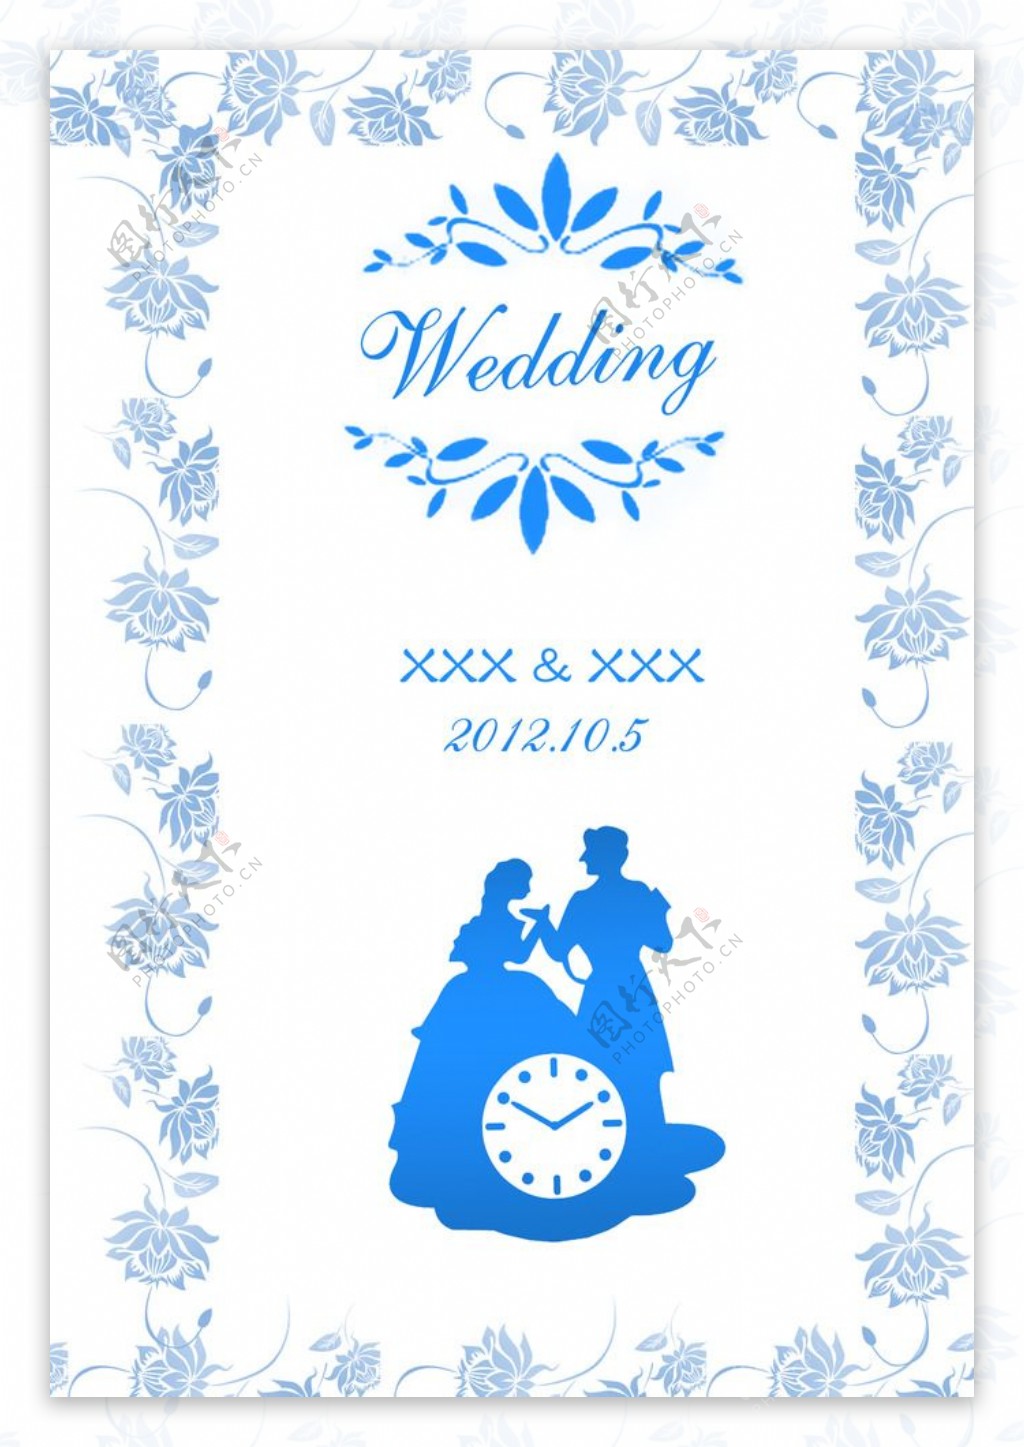 婚礼用Wedding牌PSD图片